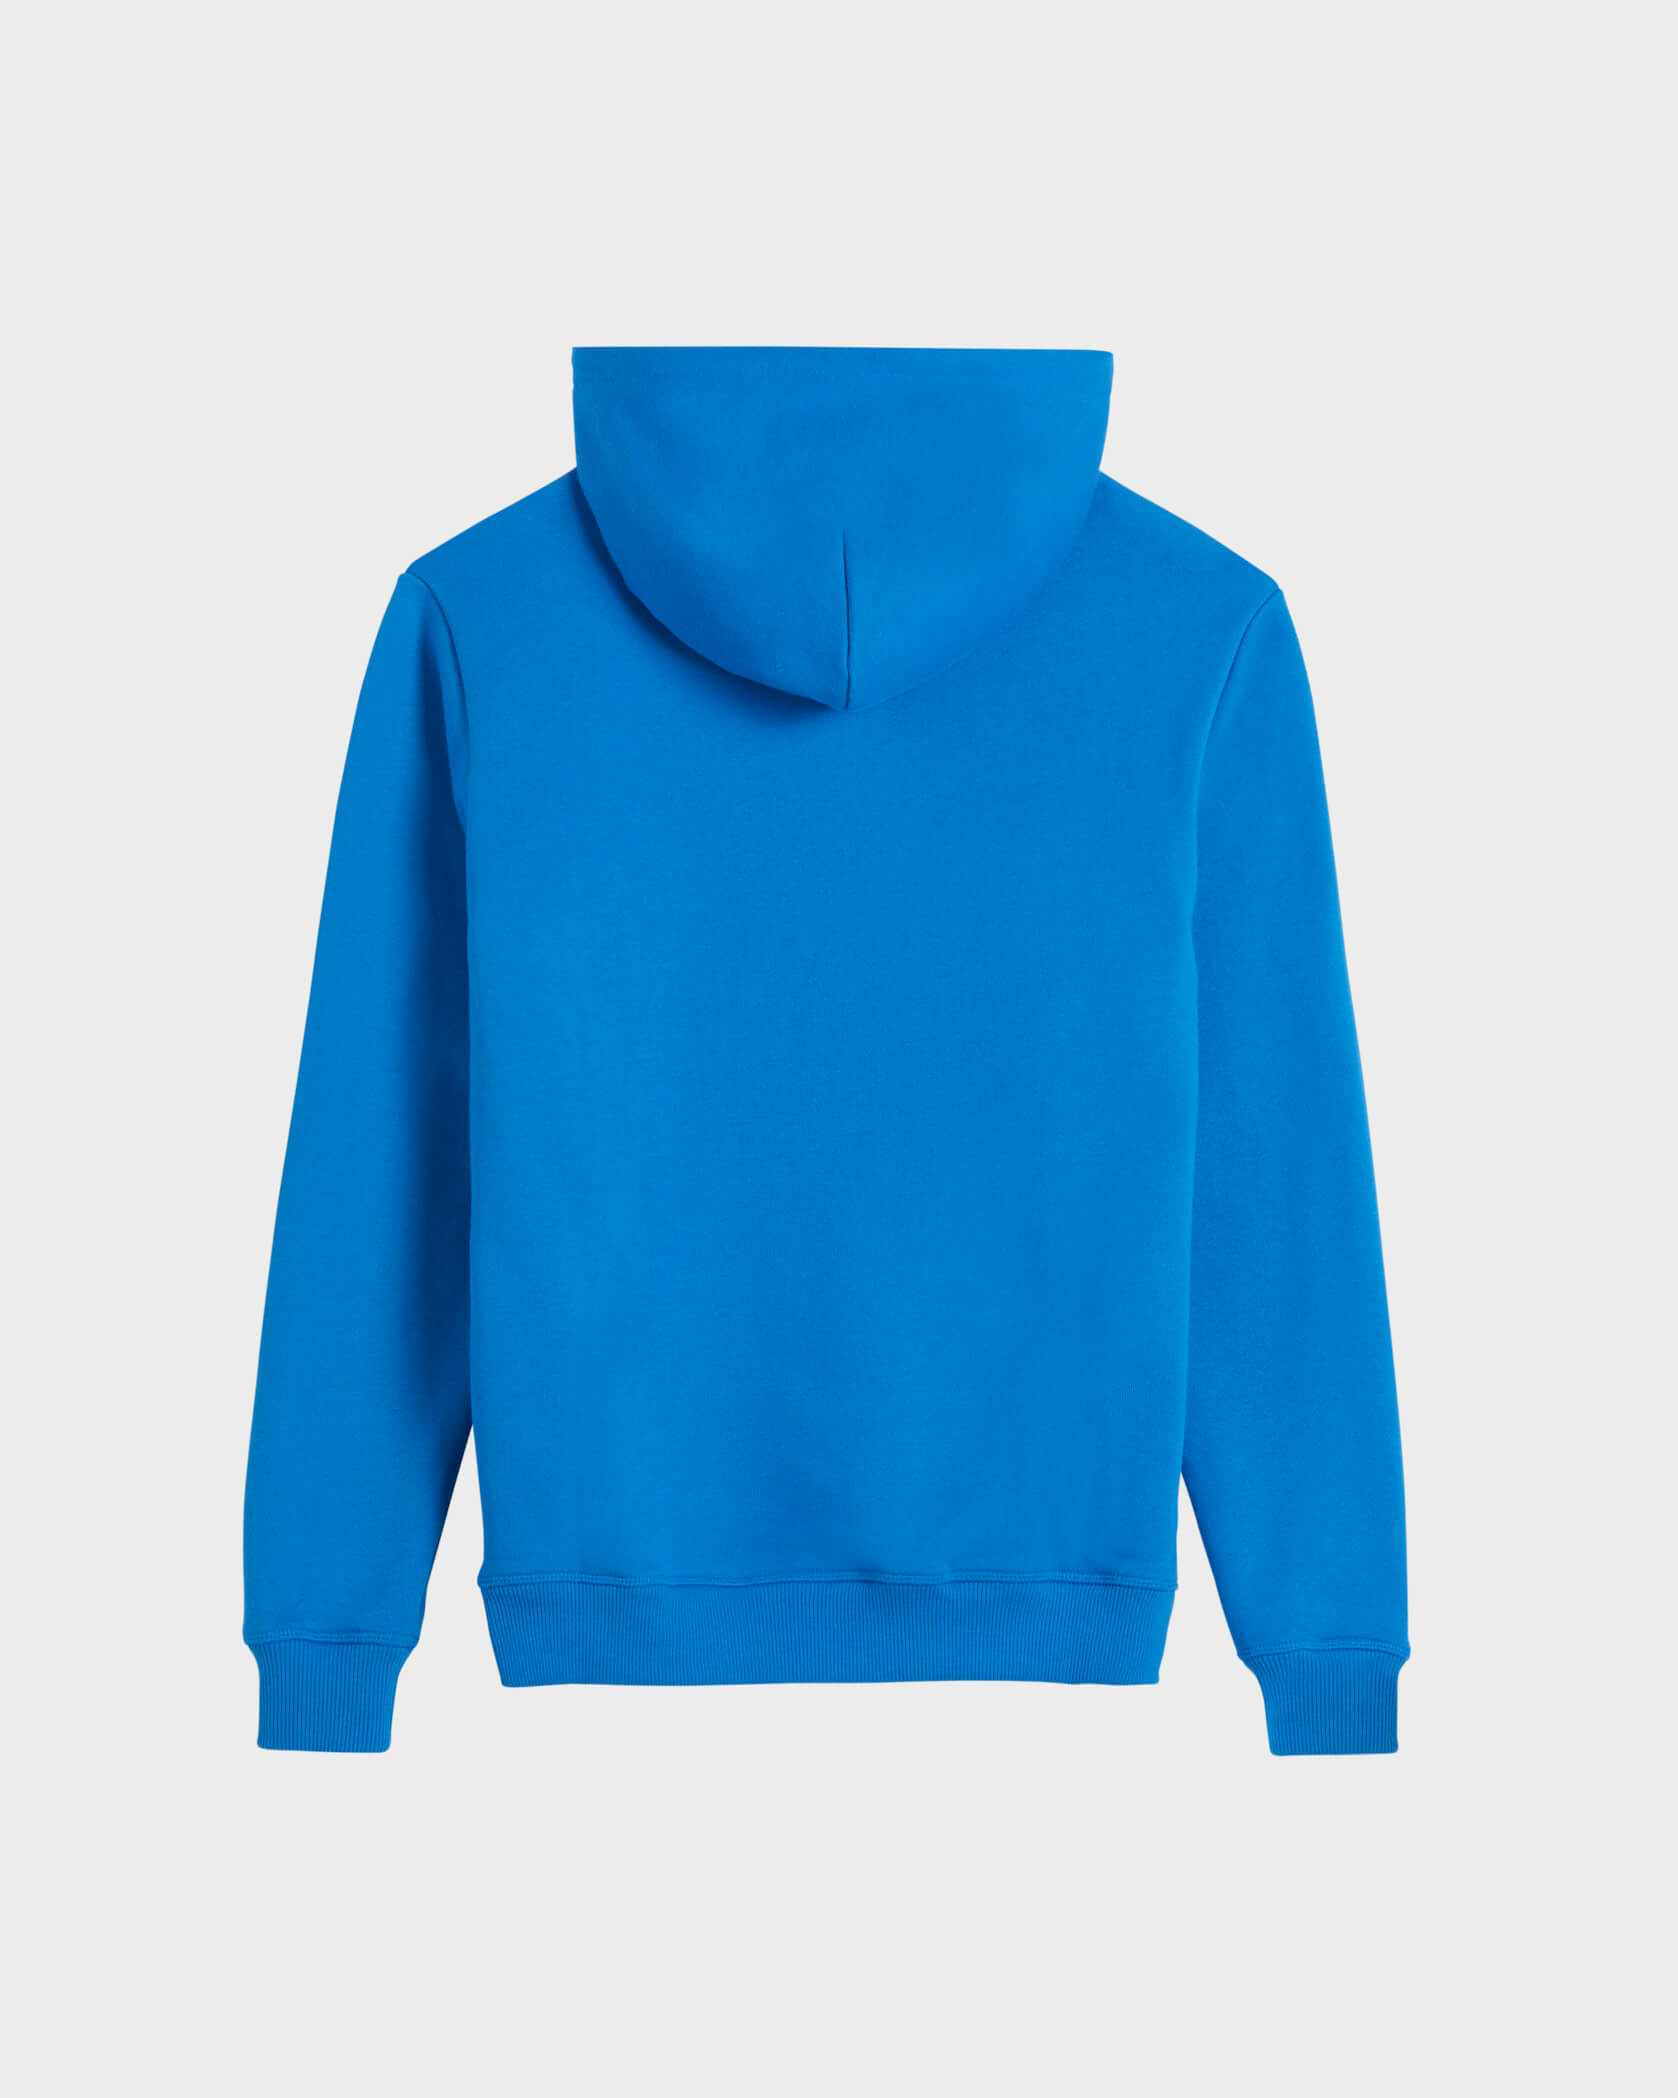 Twinzz blue hoodie